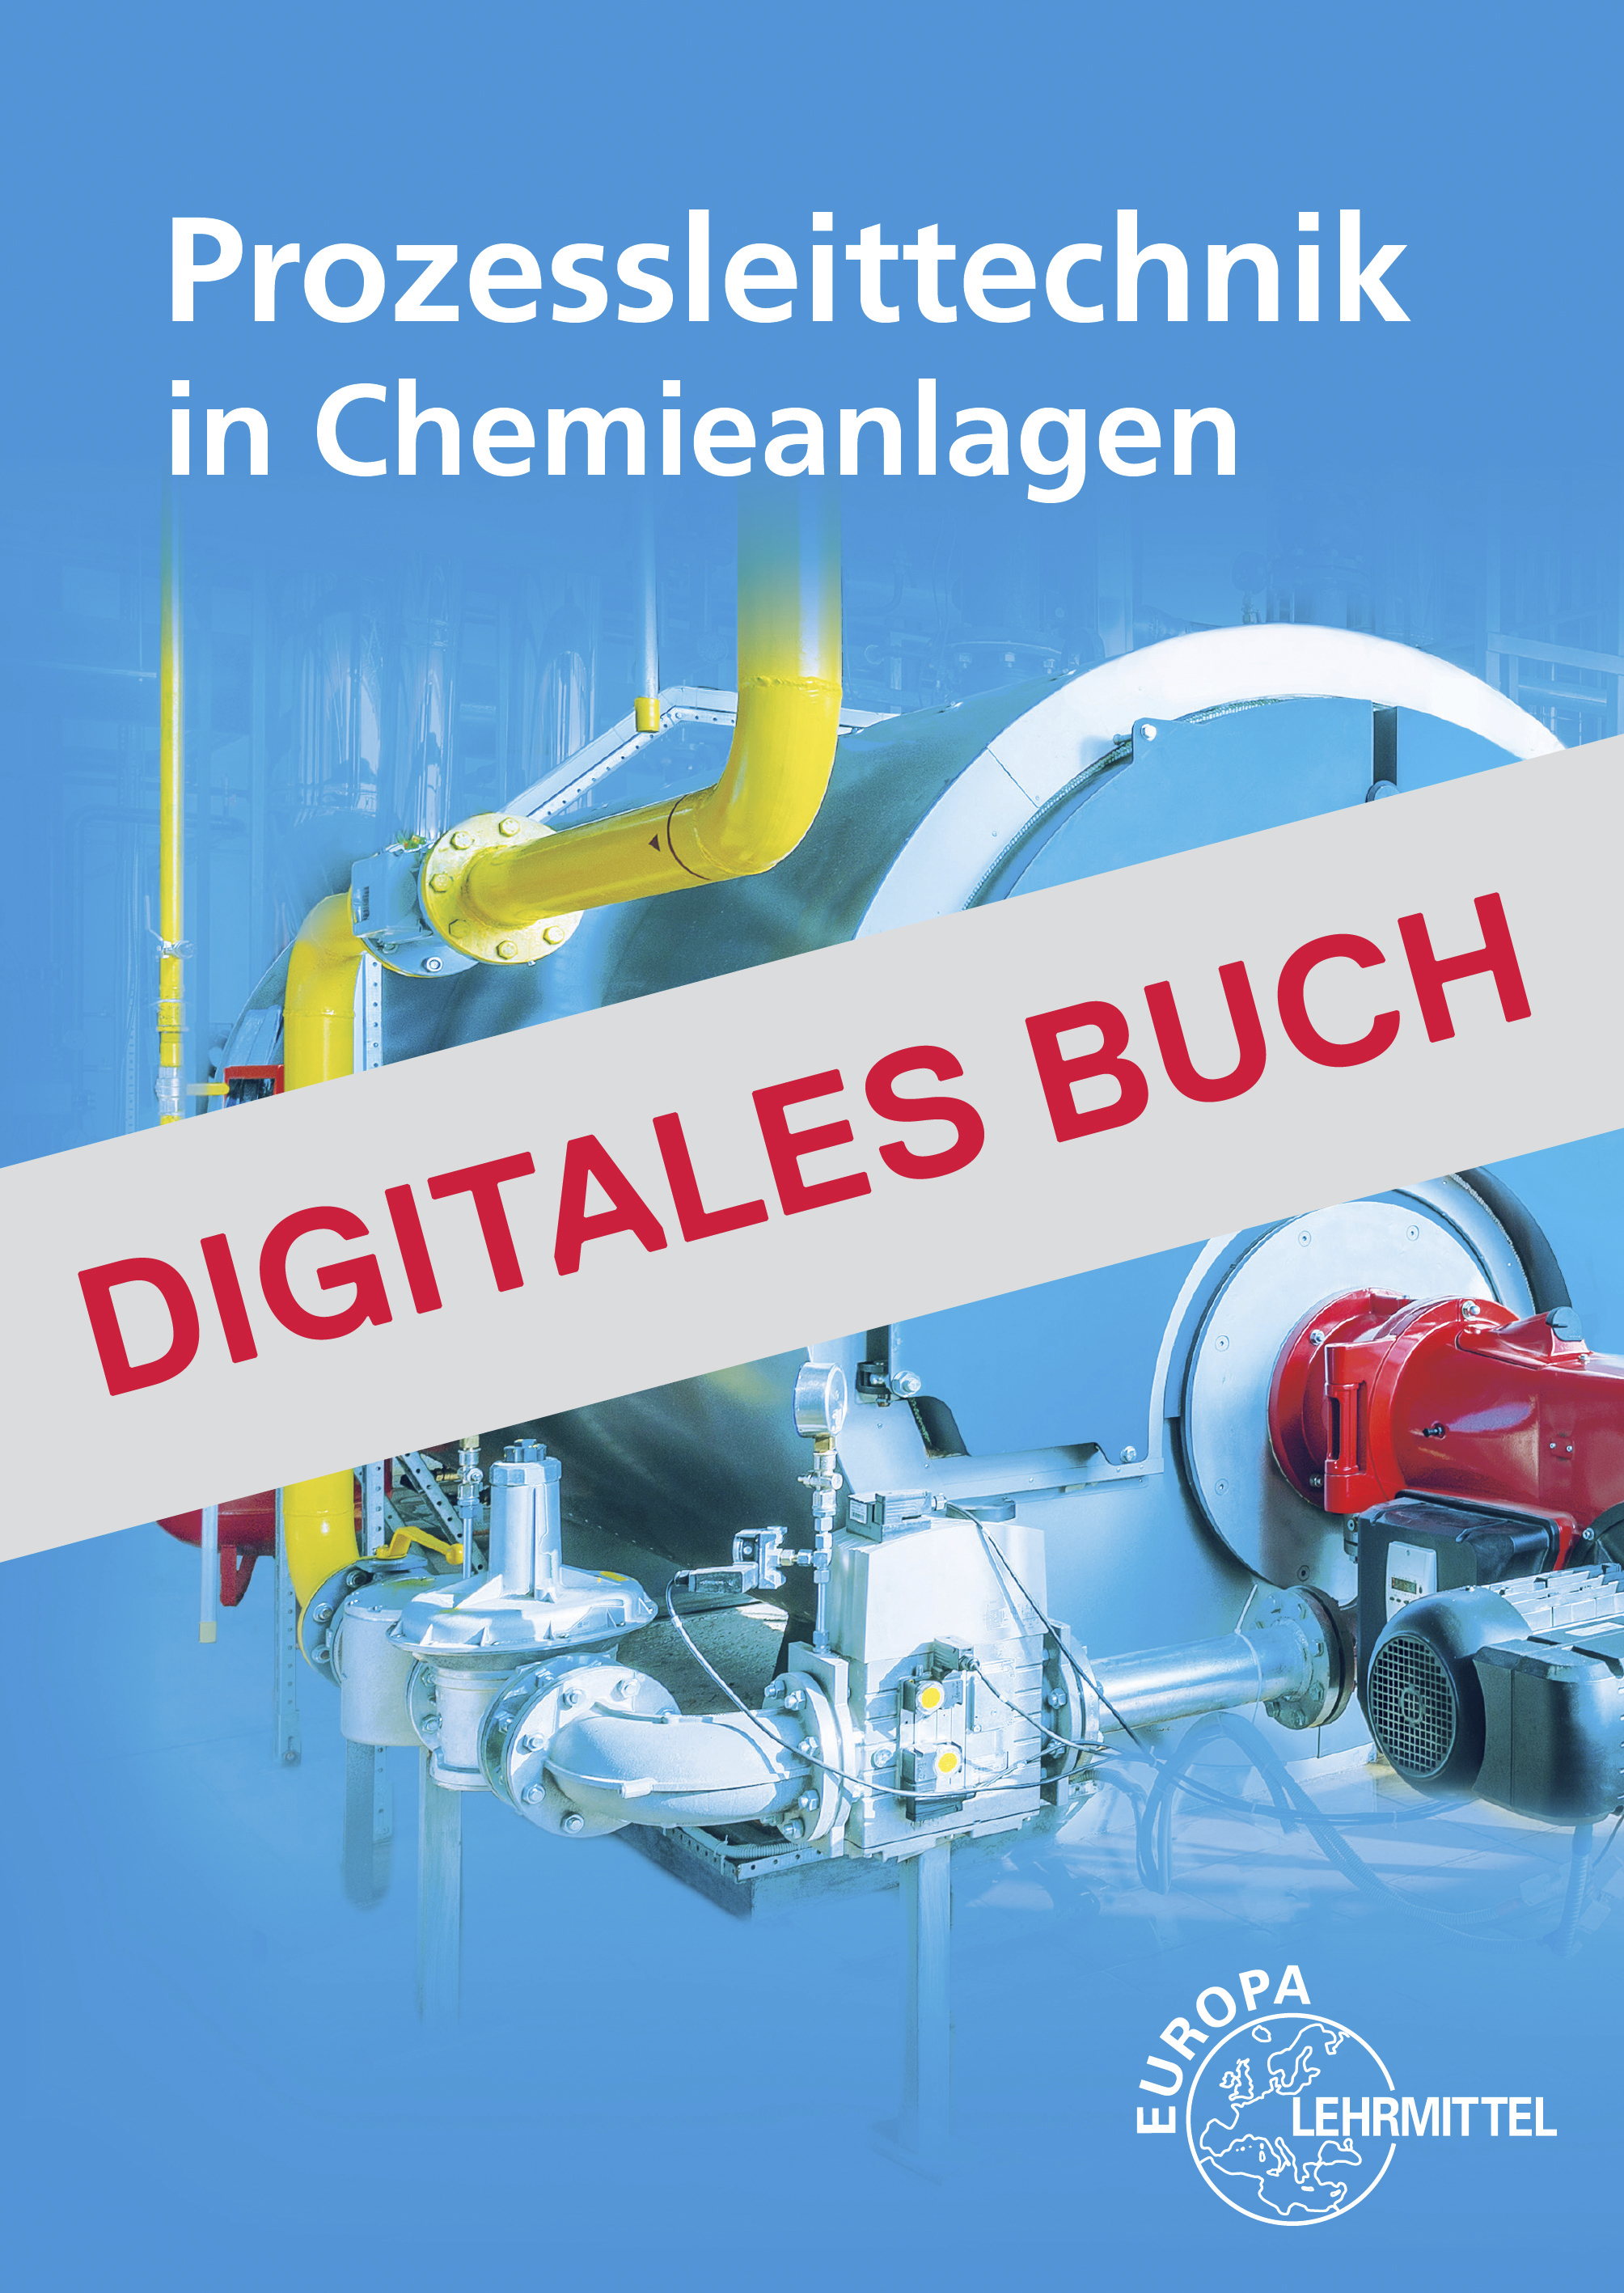 Prozessleittechnik in Chemieanlagen - Digitales Buch